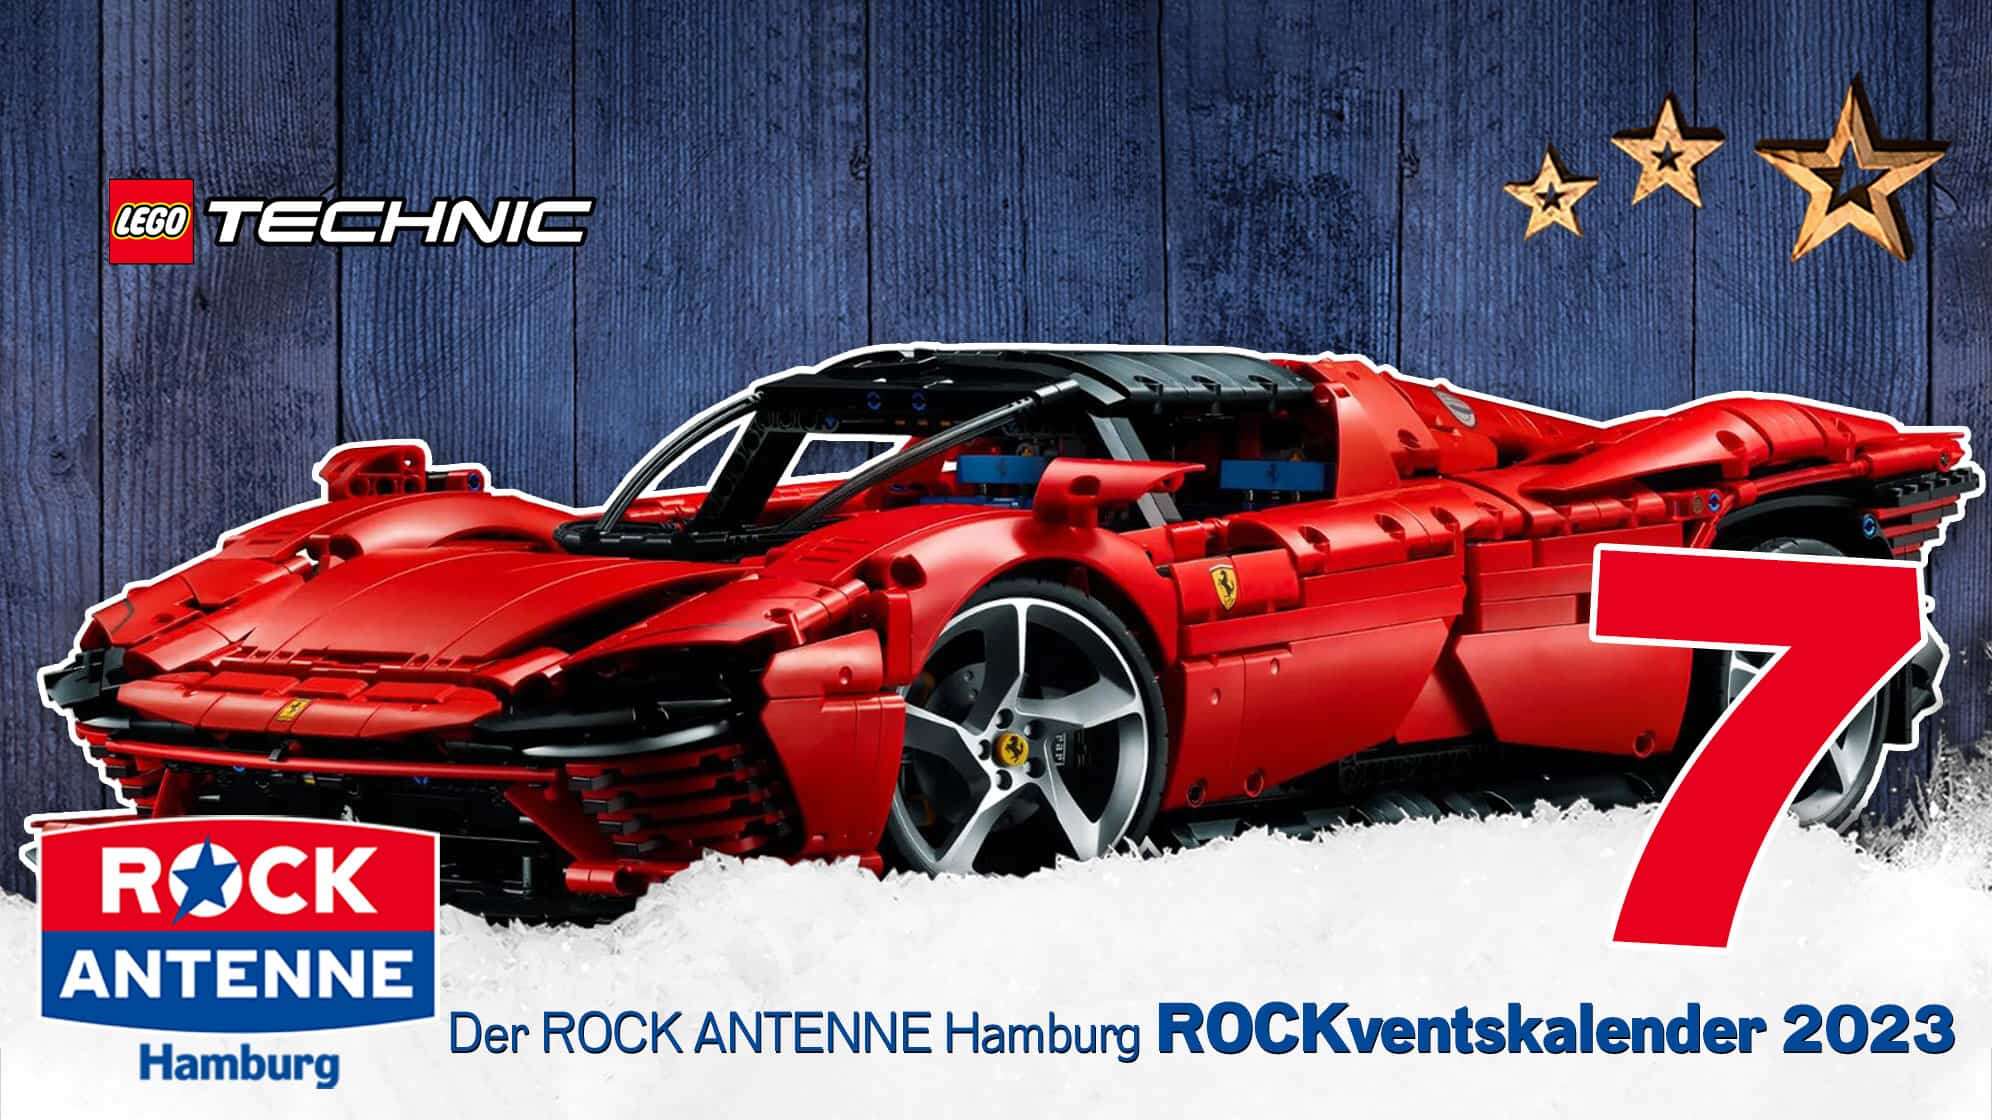 ROCK ANTENNE Hamburg ROCKventskalender Türchen 7: Ein Modell Ferrari der LEGO Technik Reihe